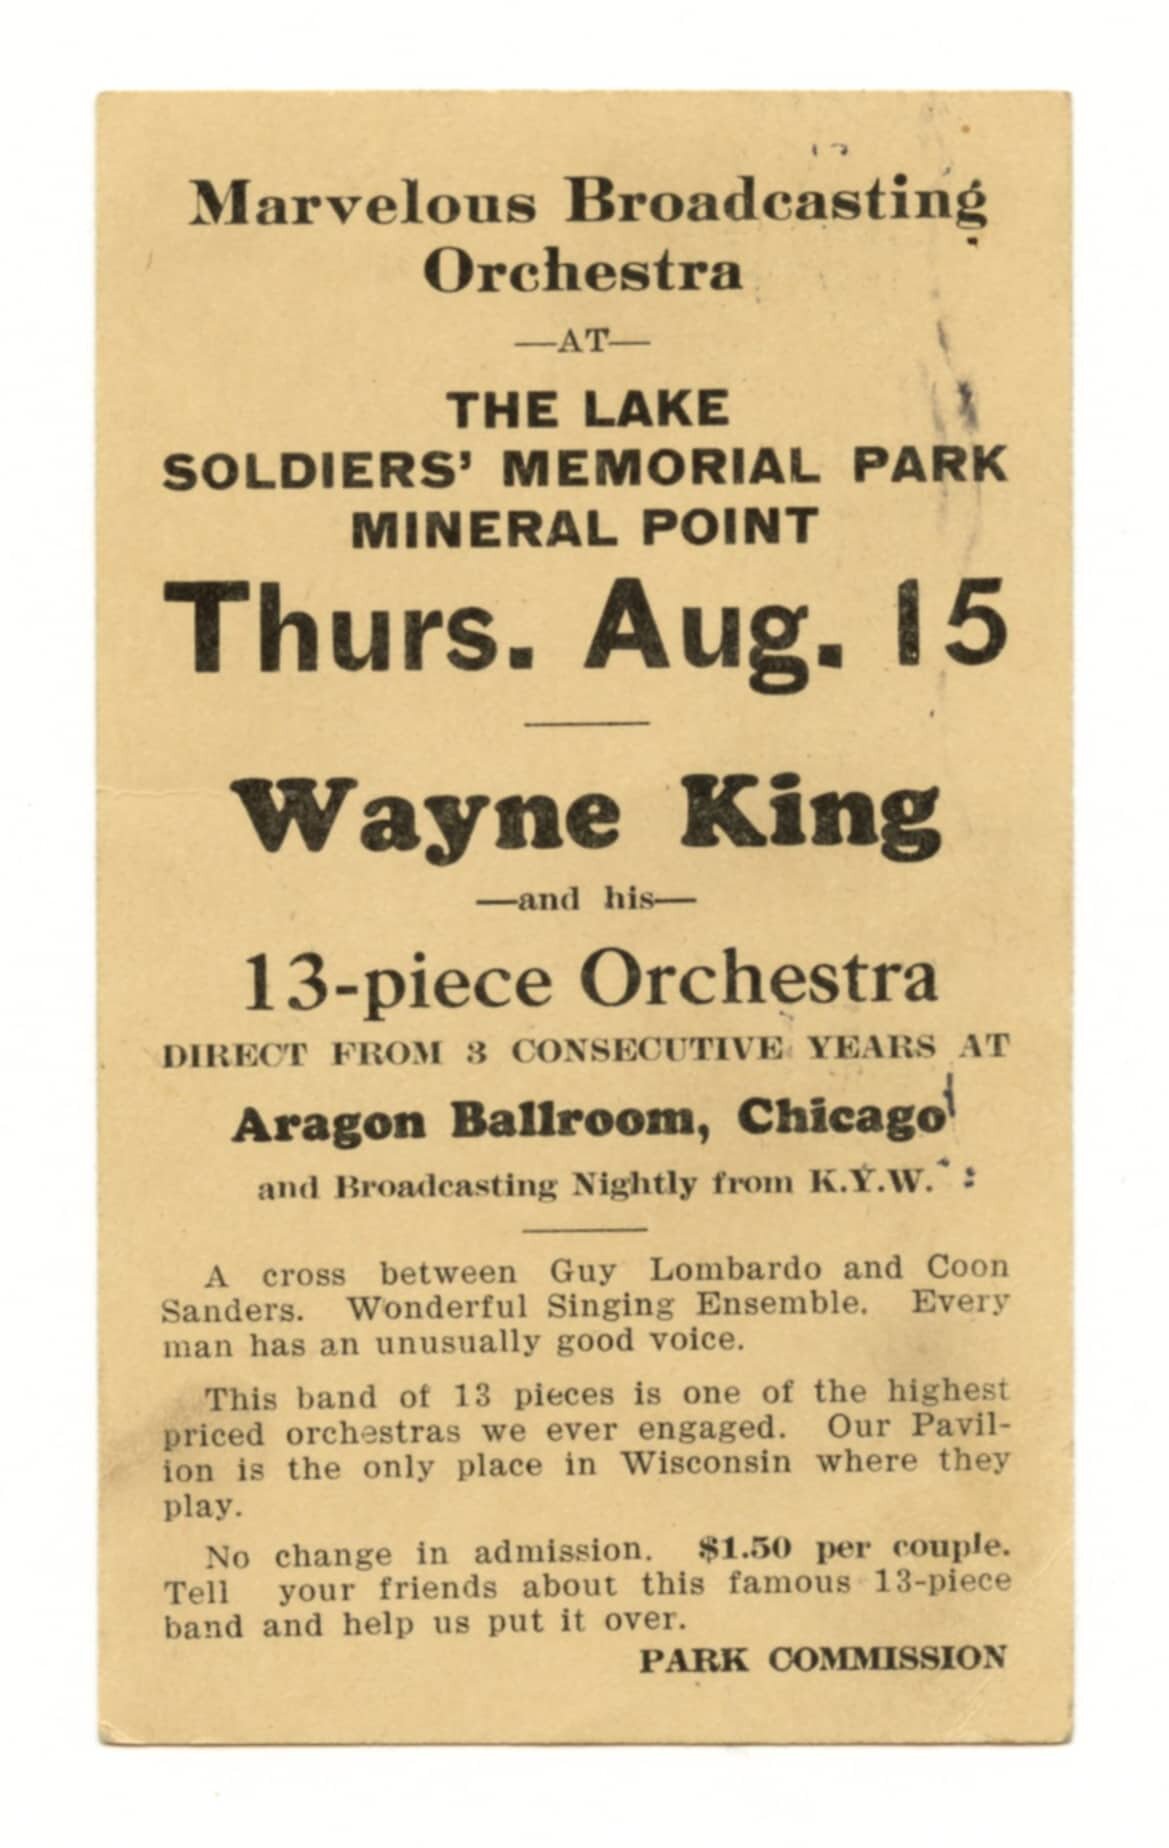 Wayne King Concert Promotion Mineral Point 1929 Postmark Vintage Postcard 